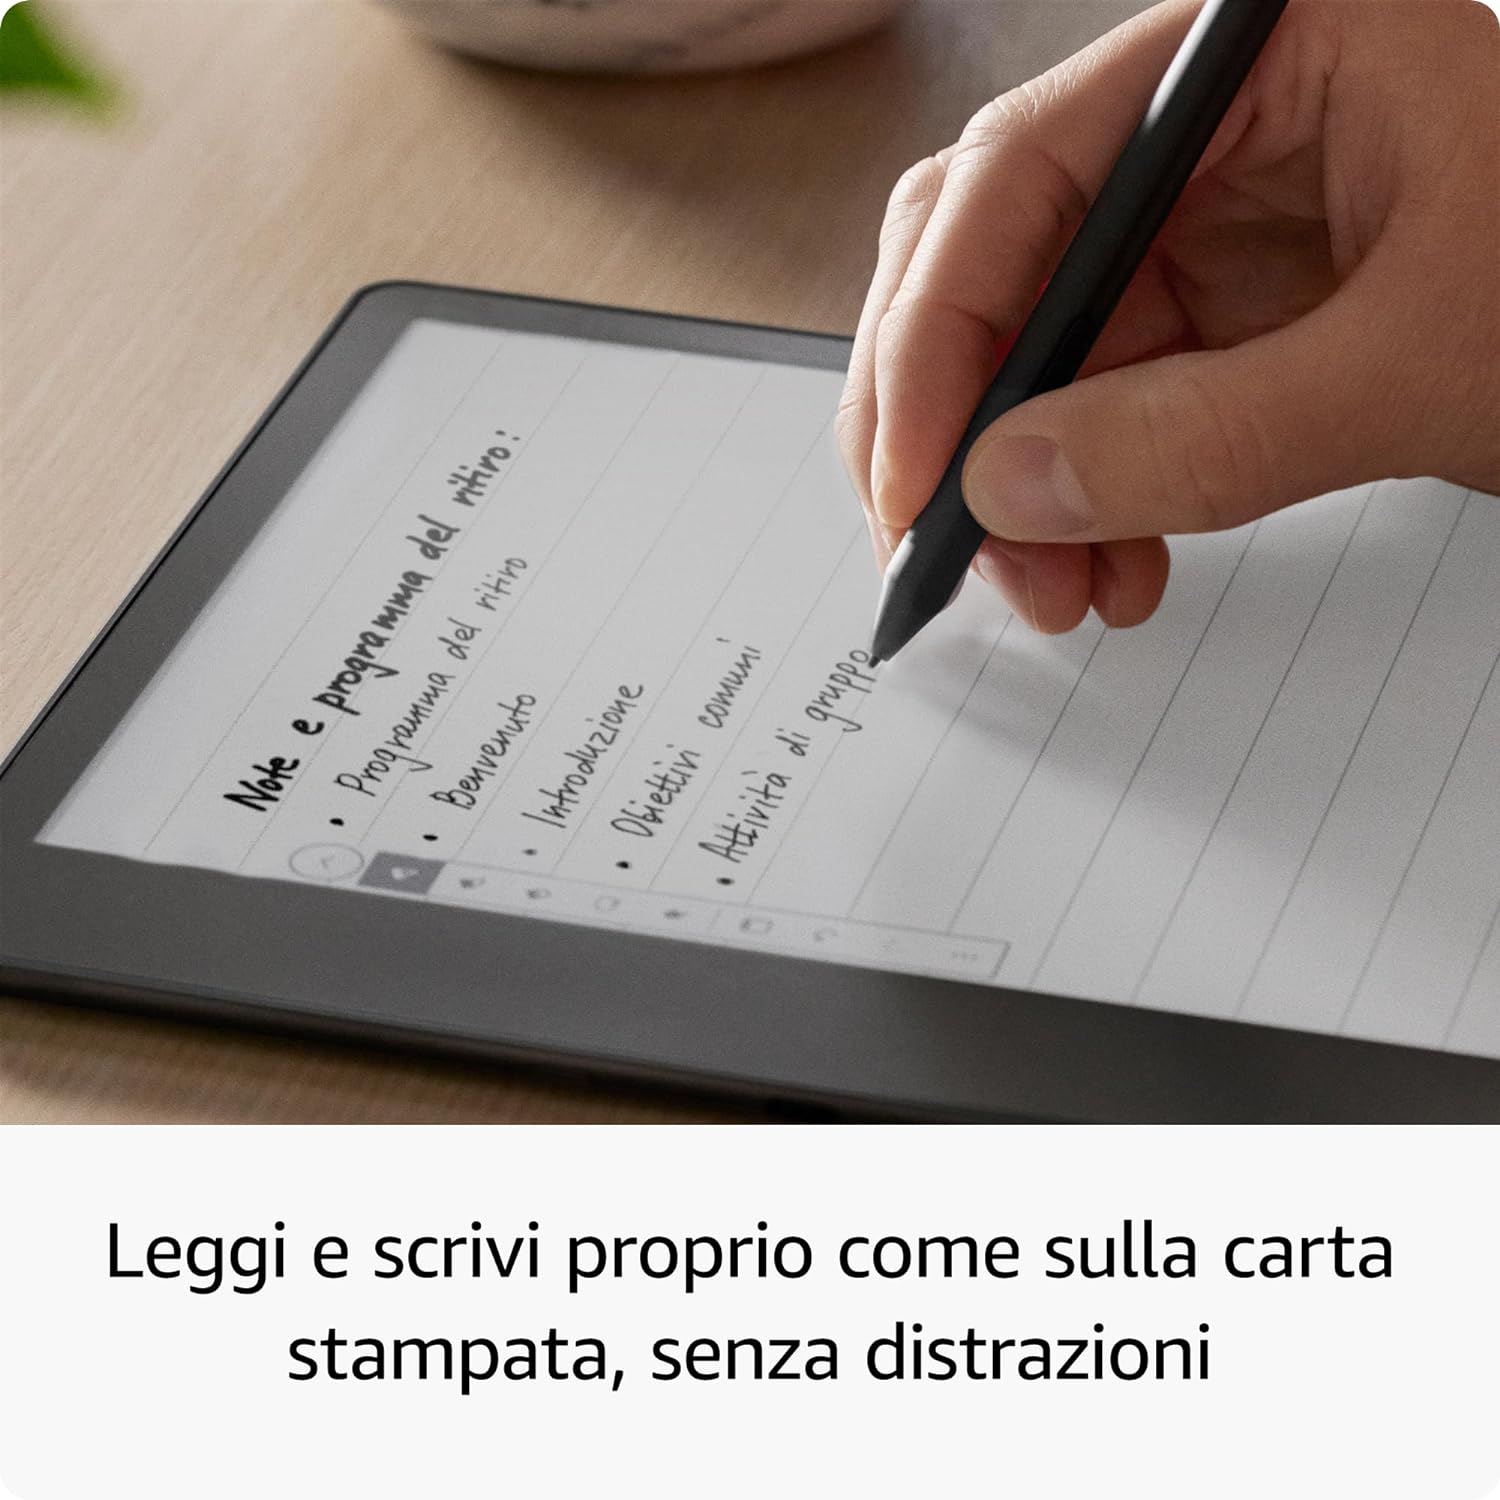 Kindle Scribe in SCONTO Black Friday: da comprare ORA! - Webnews